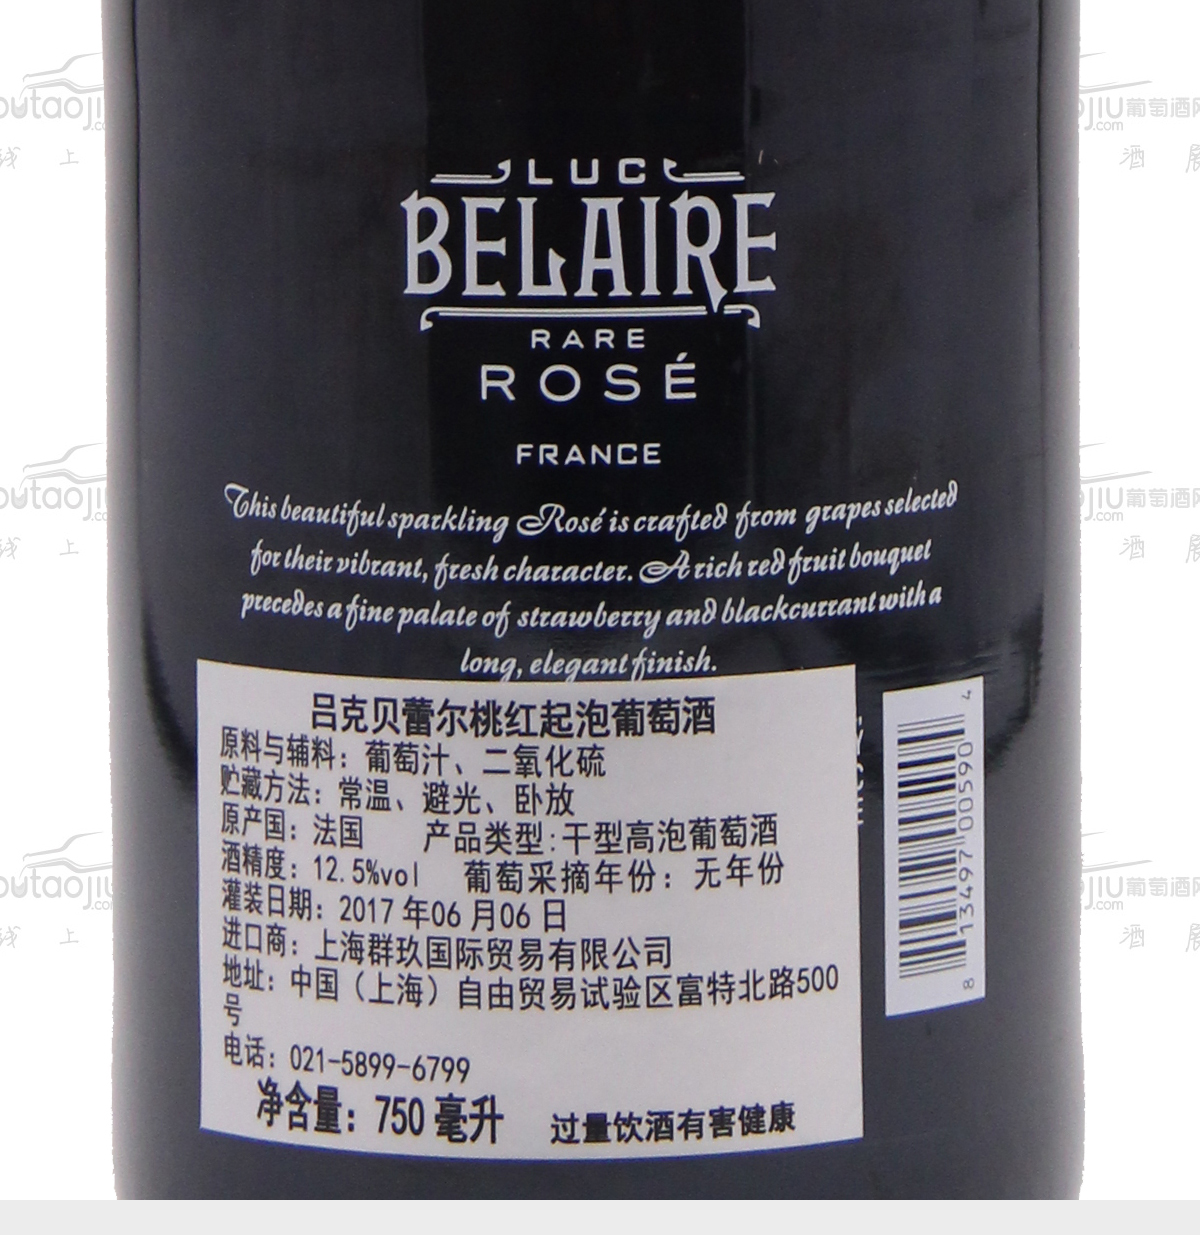 法国勃艮第柏丽酒庄吕克·贝蕾尔混酿桃红起泡葡萄酒